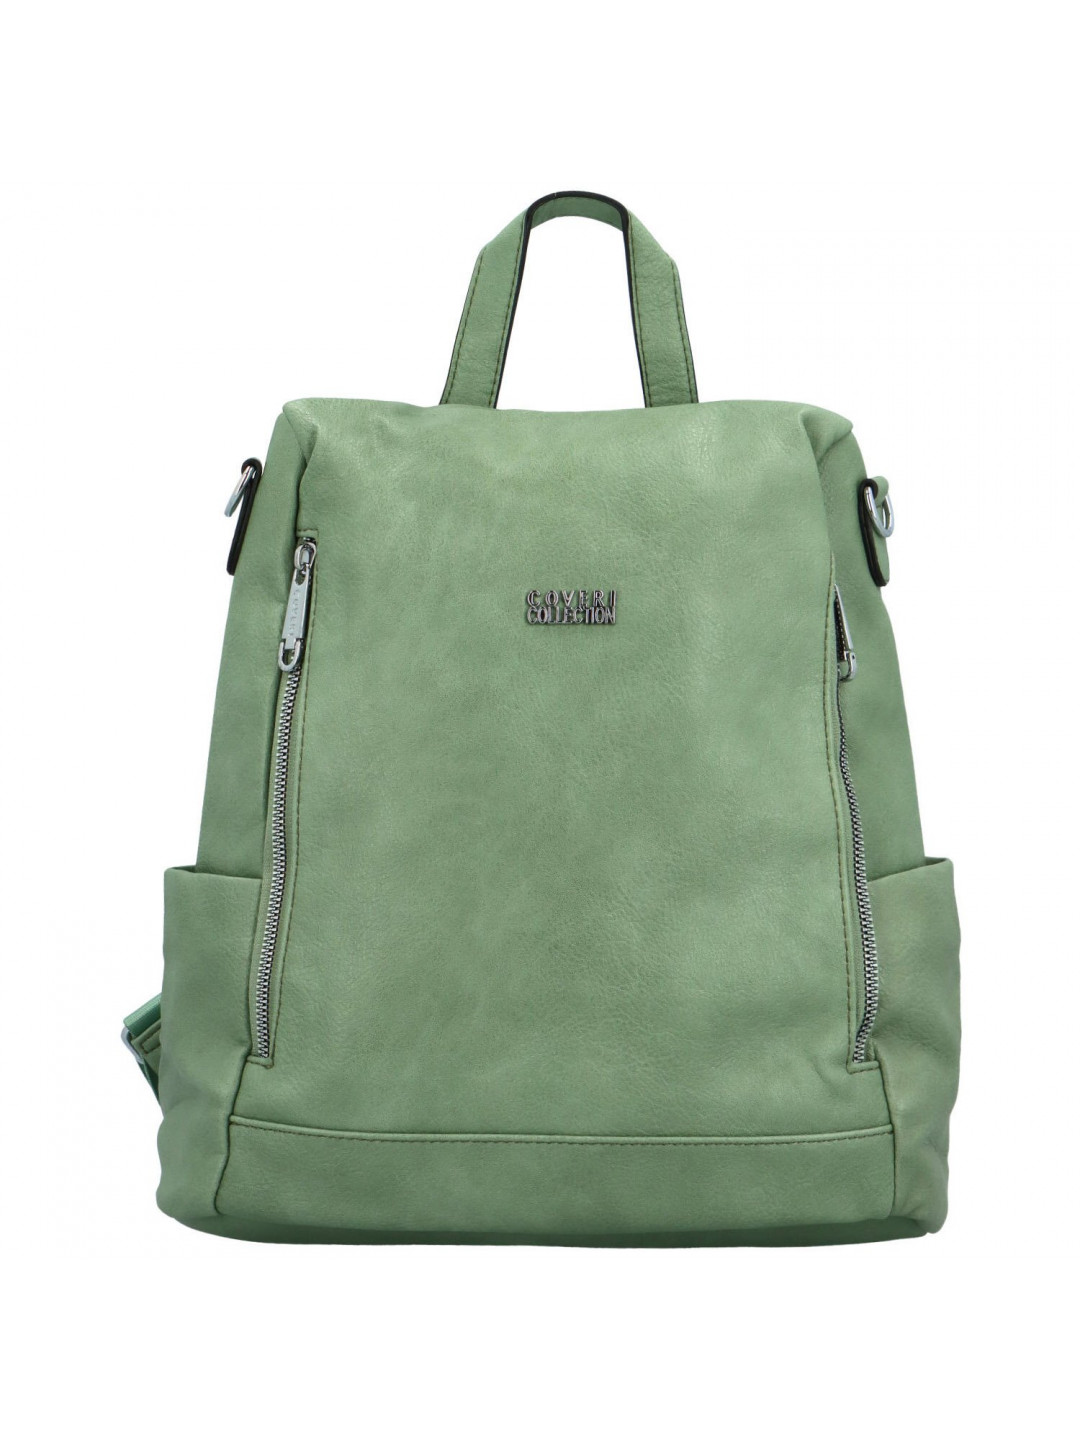 Stylový dámský koženkový kabelko batoh Trinida zelený